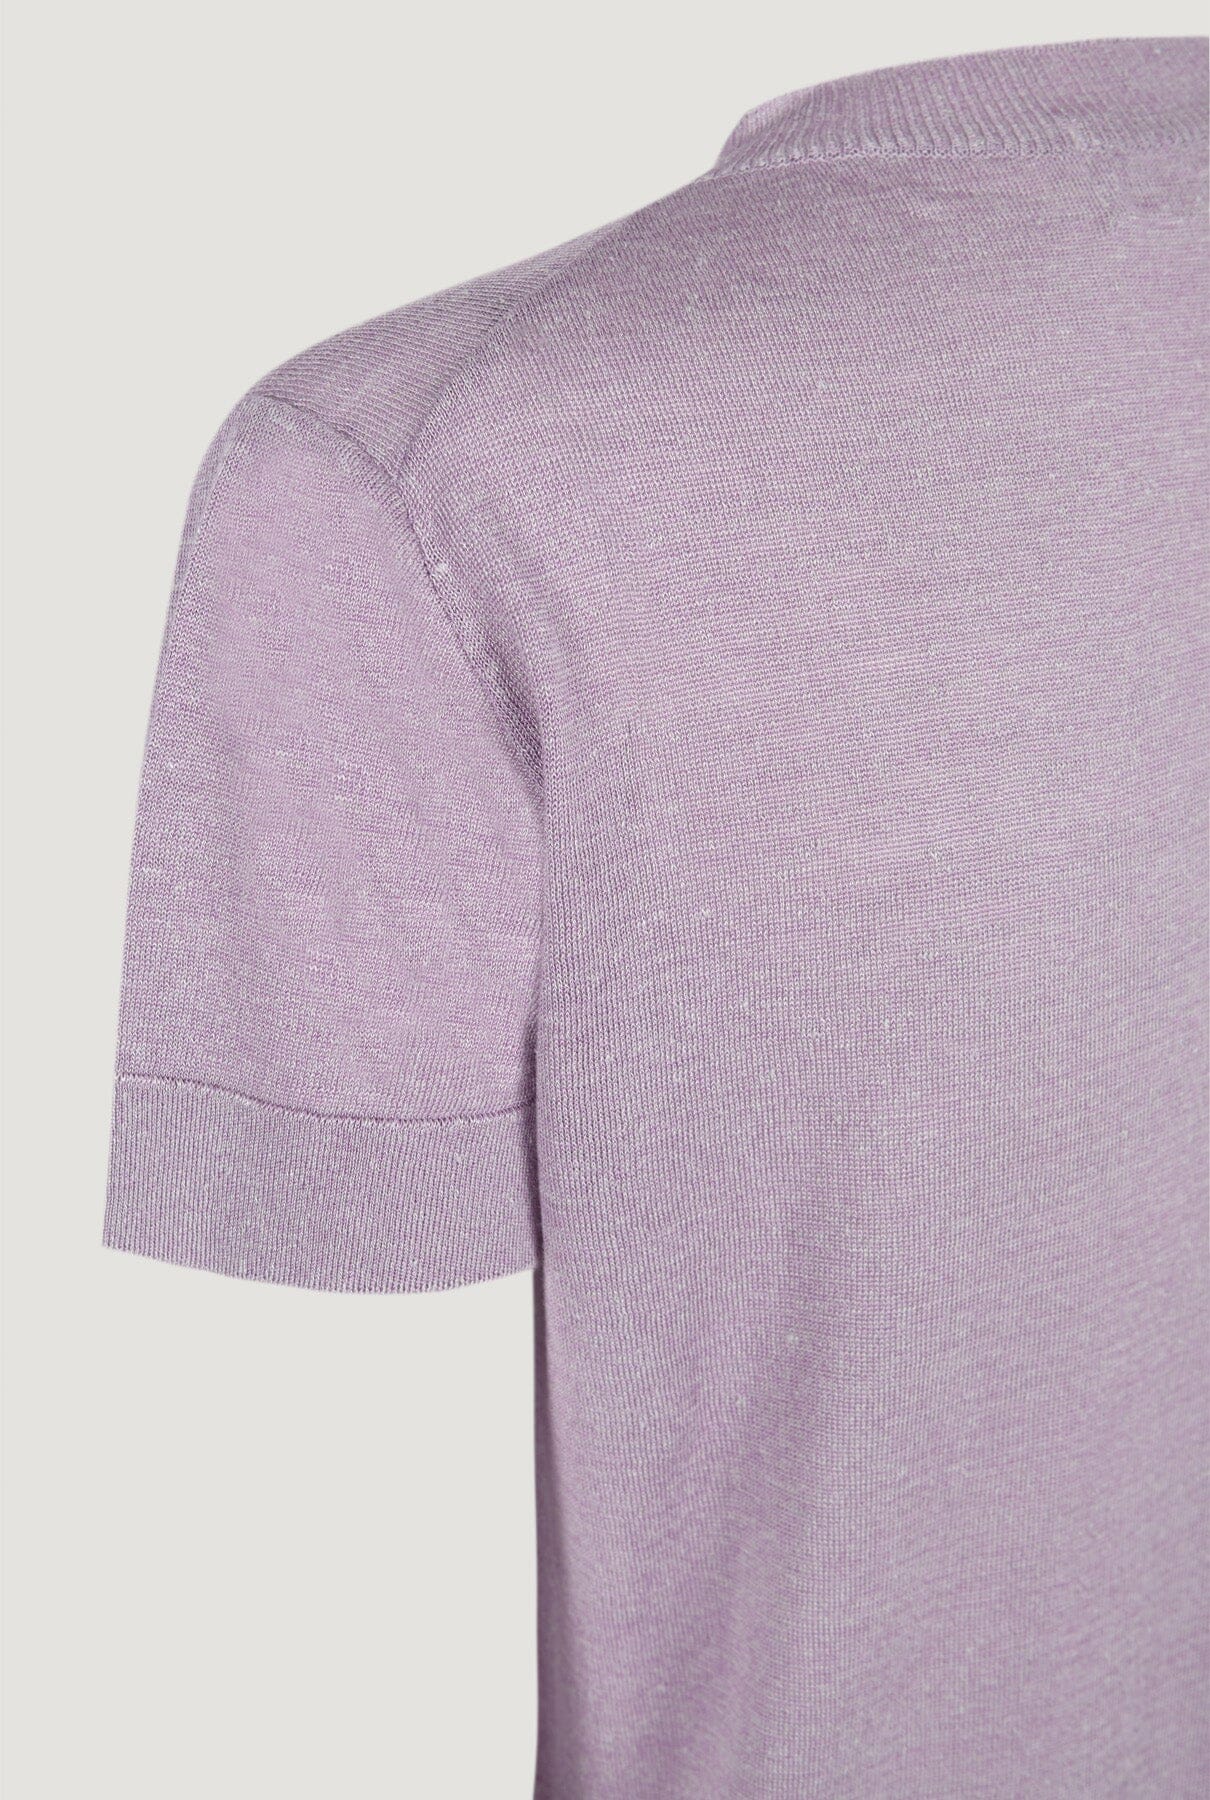 Camiseta de punto lino y seda lila T-Shirts & tops Culto 1105 